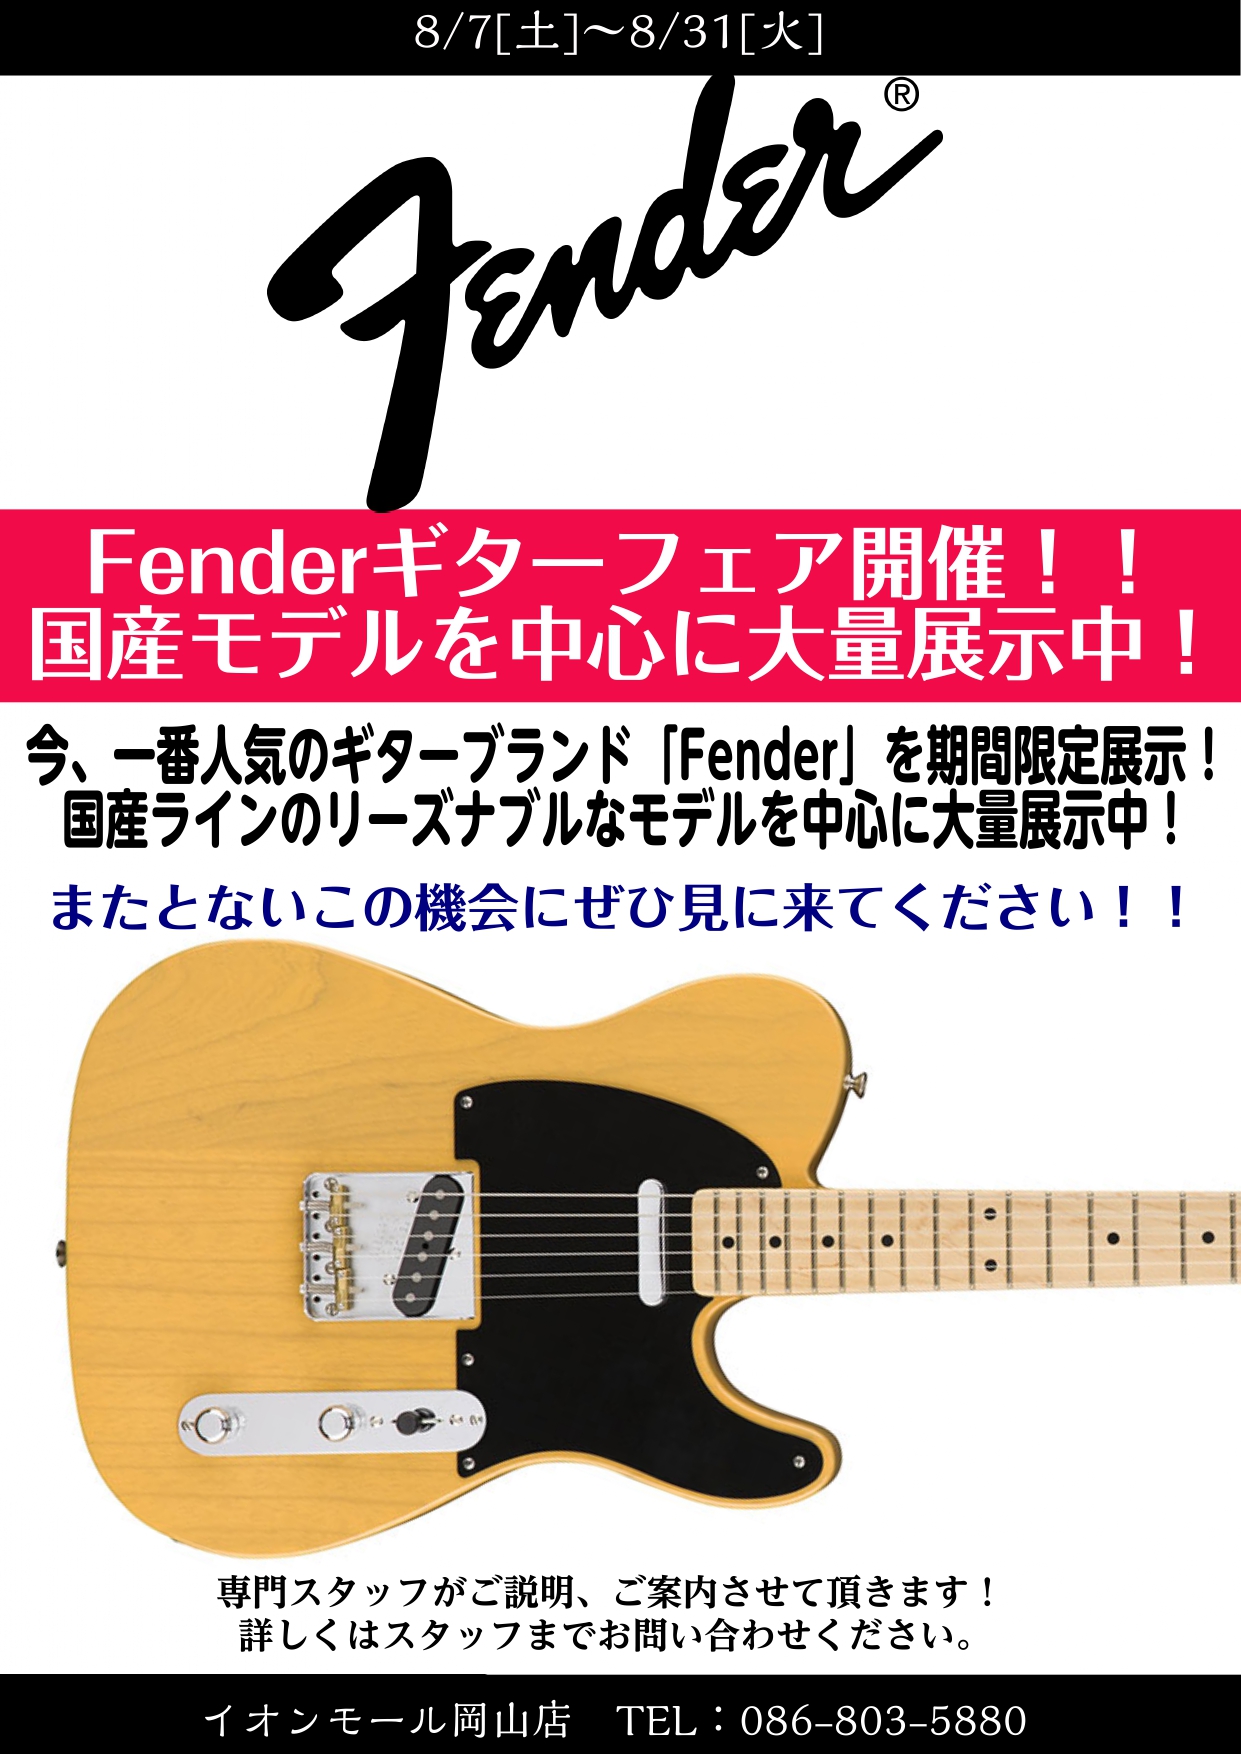 *国産モデルを中心に大量入荷しました！FENDER フェアー　8月31日まで！ *展示ギター紹介 **American Professional シリーズ USA製フェンダーの中心的なモデル。昔ながらのフェンダーの良さは継承しつつ、弾き心地の改善に細部までこだわった非常に弾いやすいギターに仕上がって […]